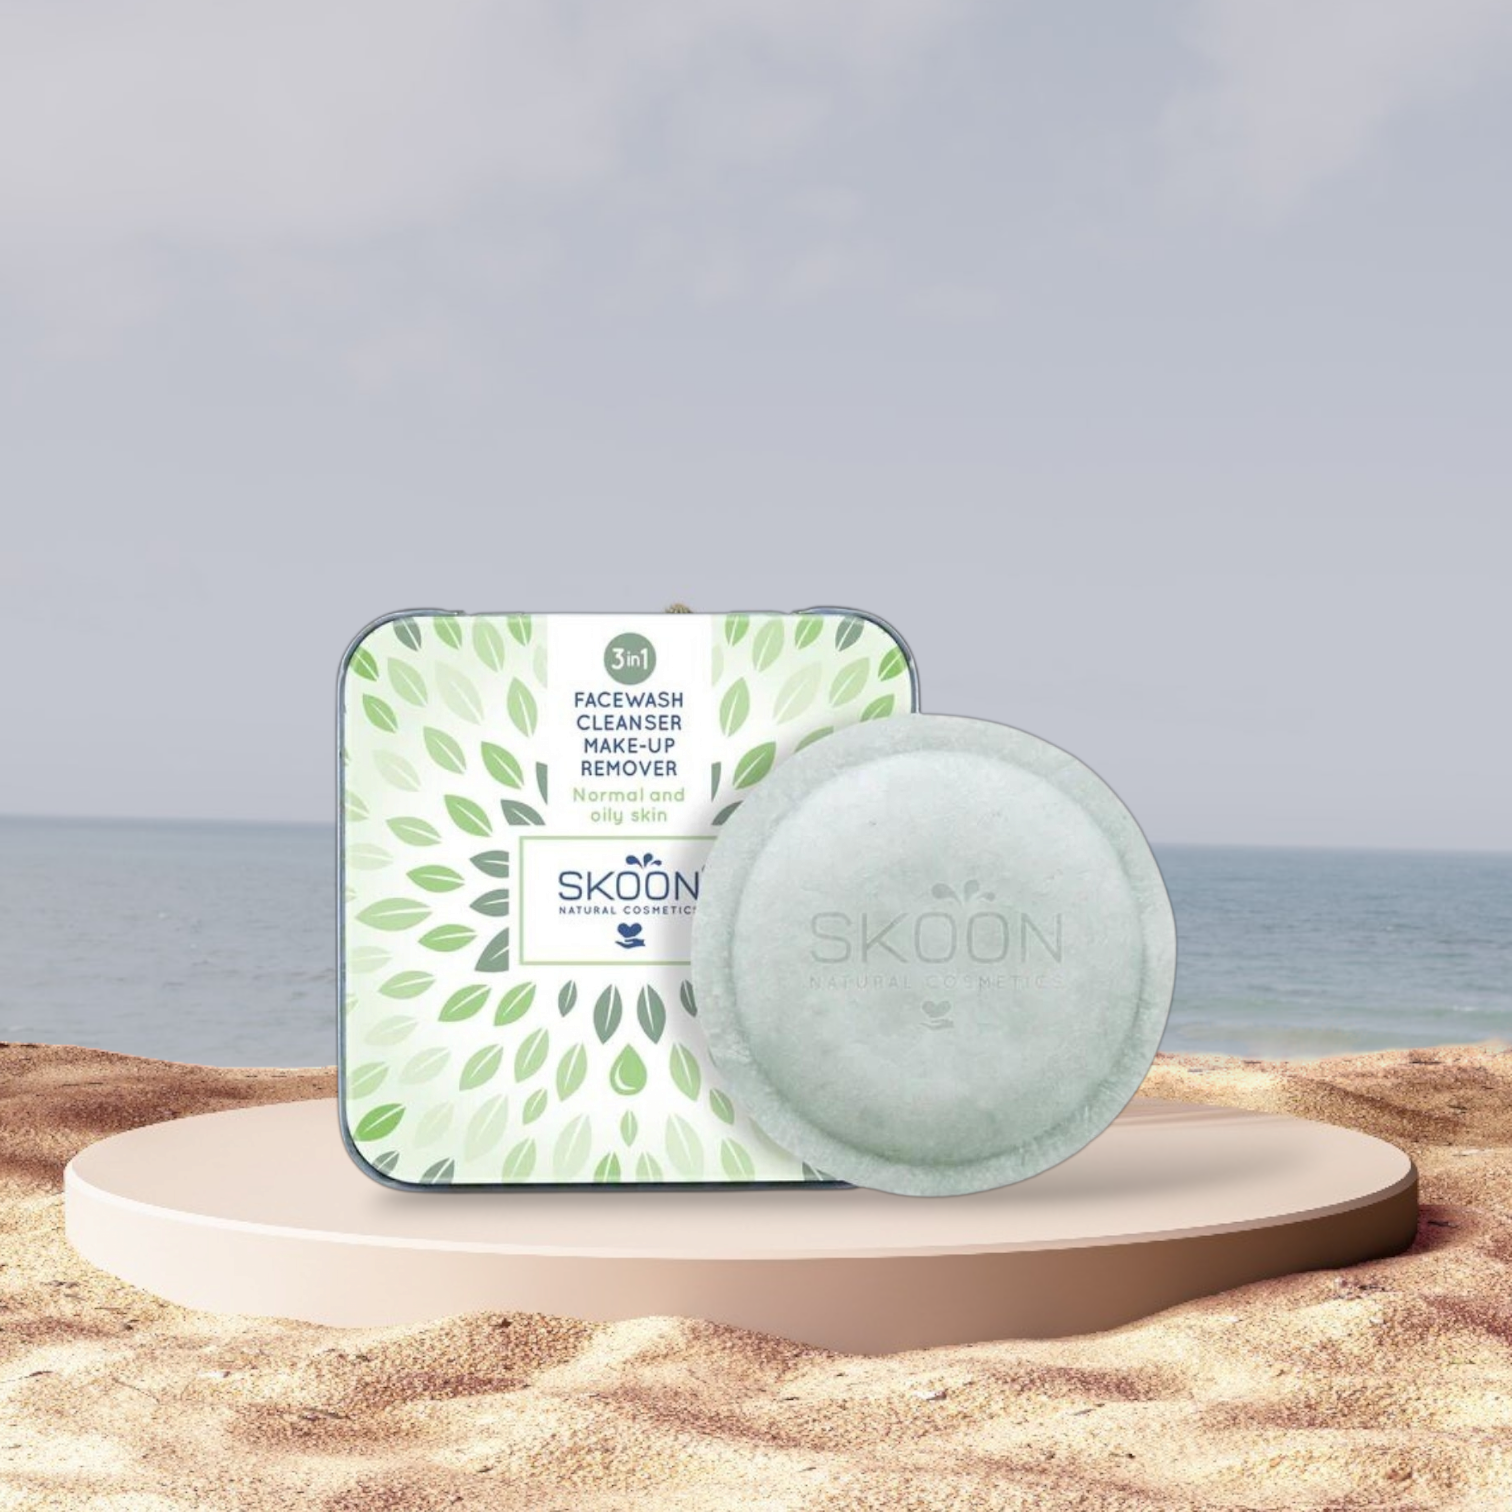 En naturlig Skoon Facewash, Cleanser og Makeup remover - Normal og fedtet hud, der sidder på et sand ved siden af havet, fremmer velvære.